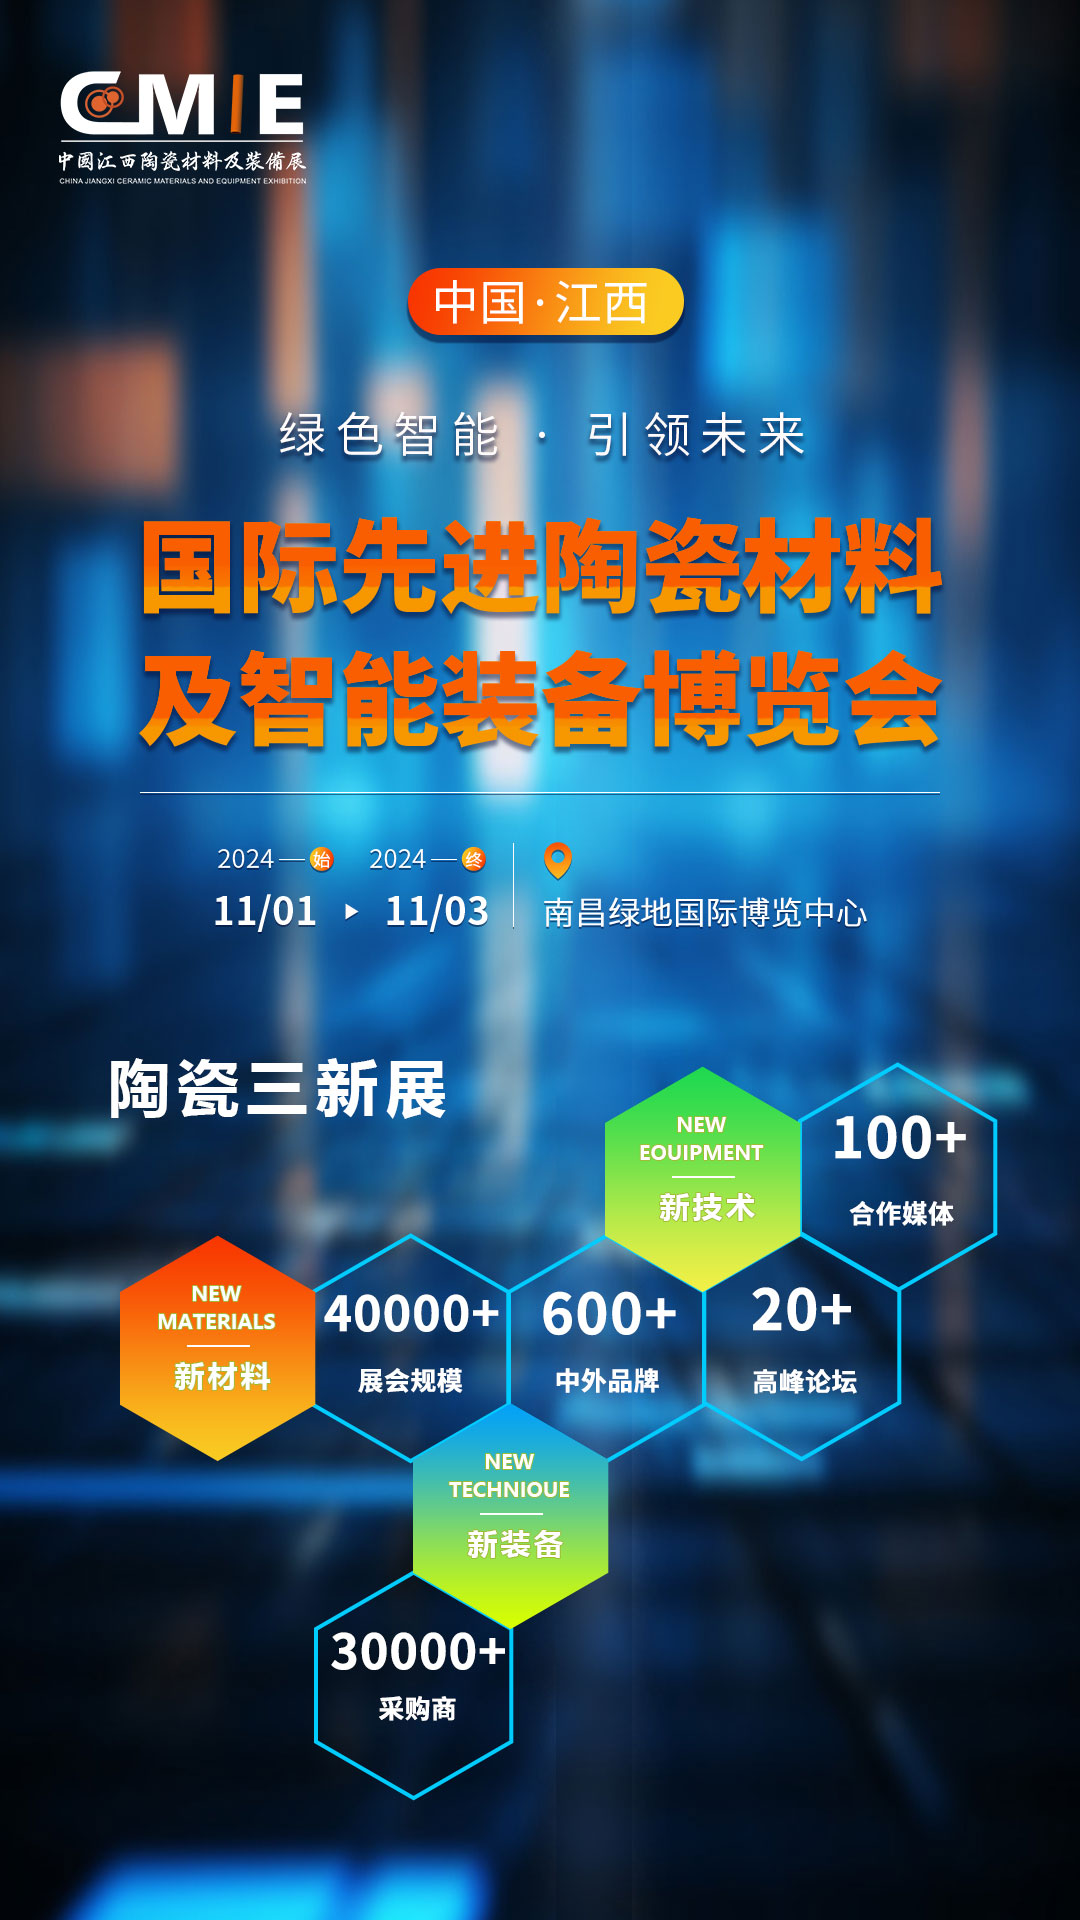 中国（江西）国际先进陶瓷材料及智能装备博览会将于2024年11月1-3日在南昌开幕